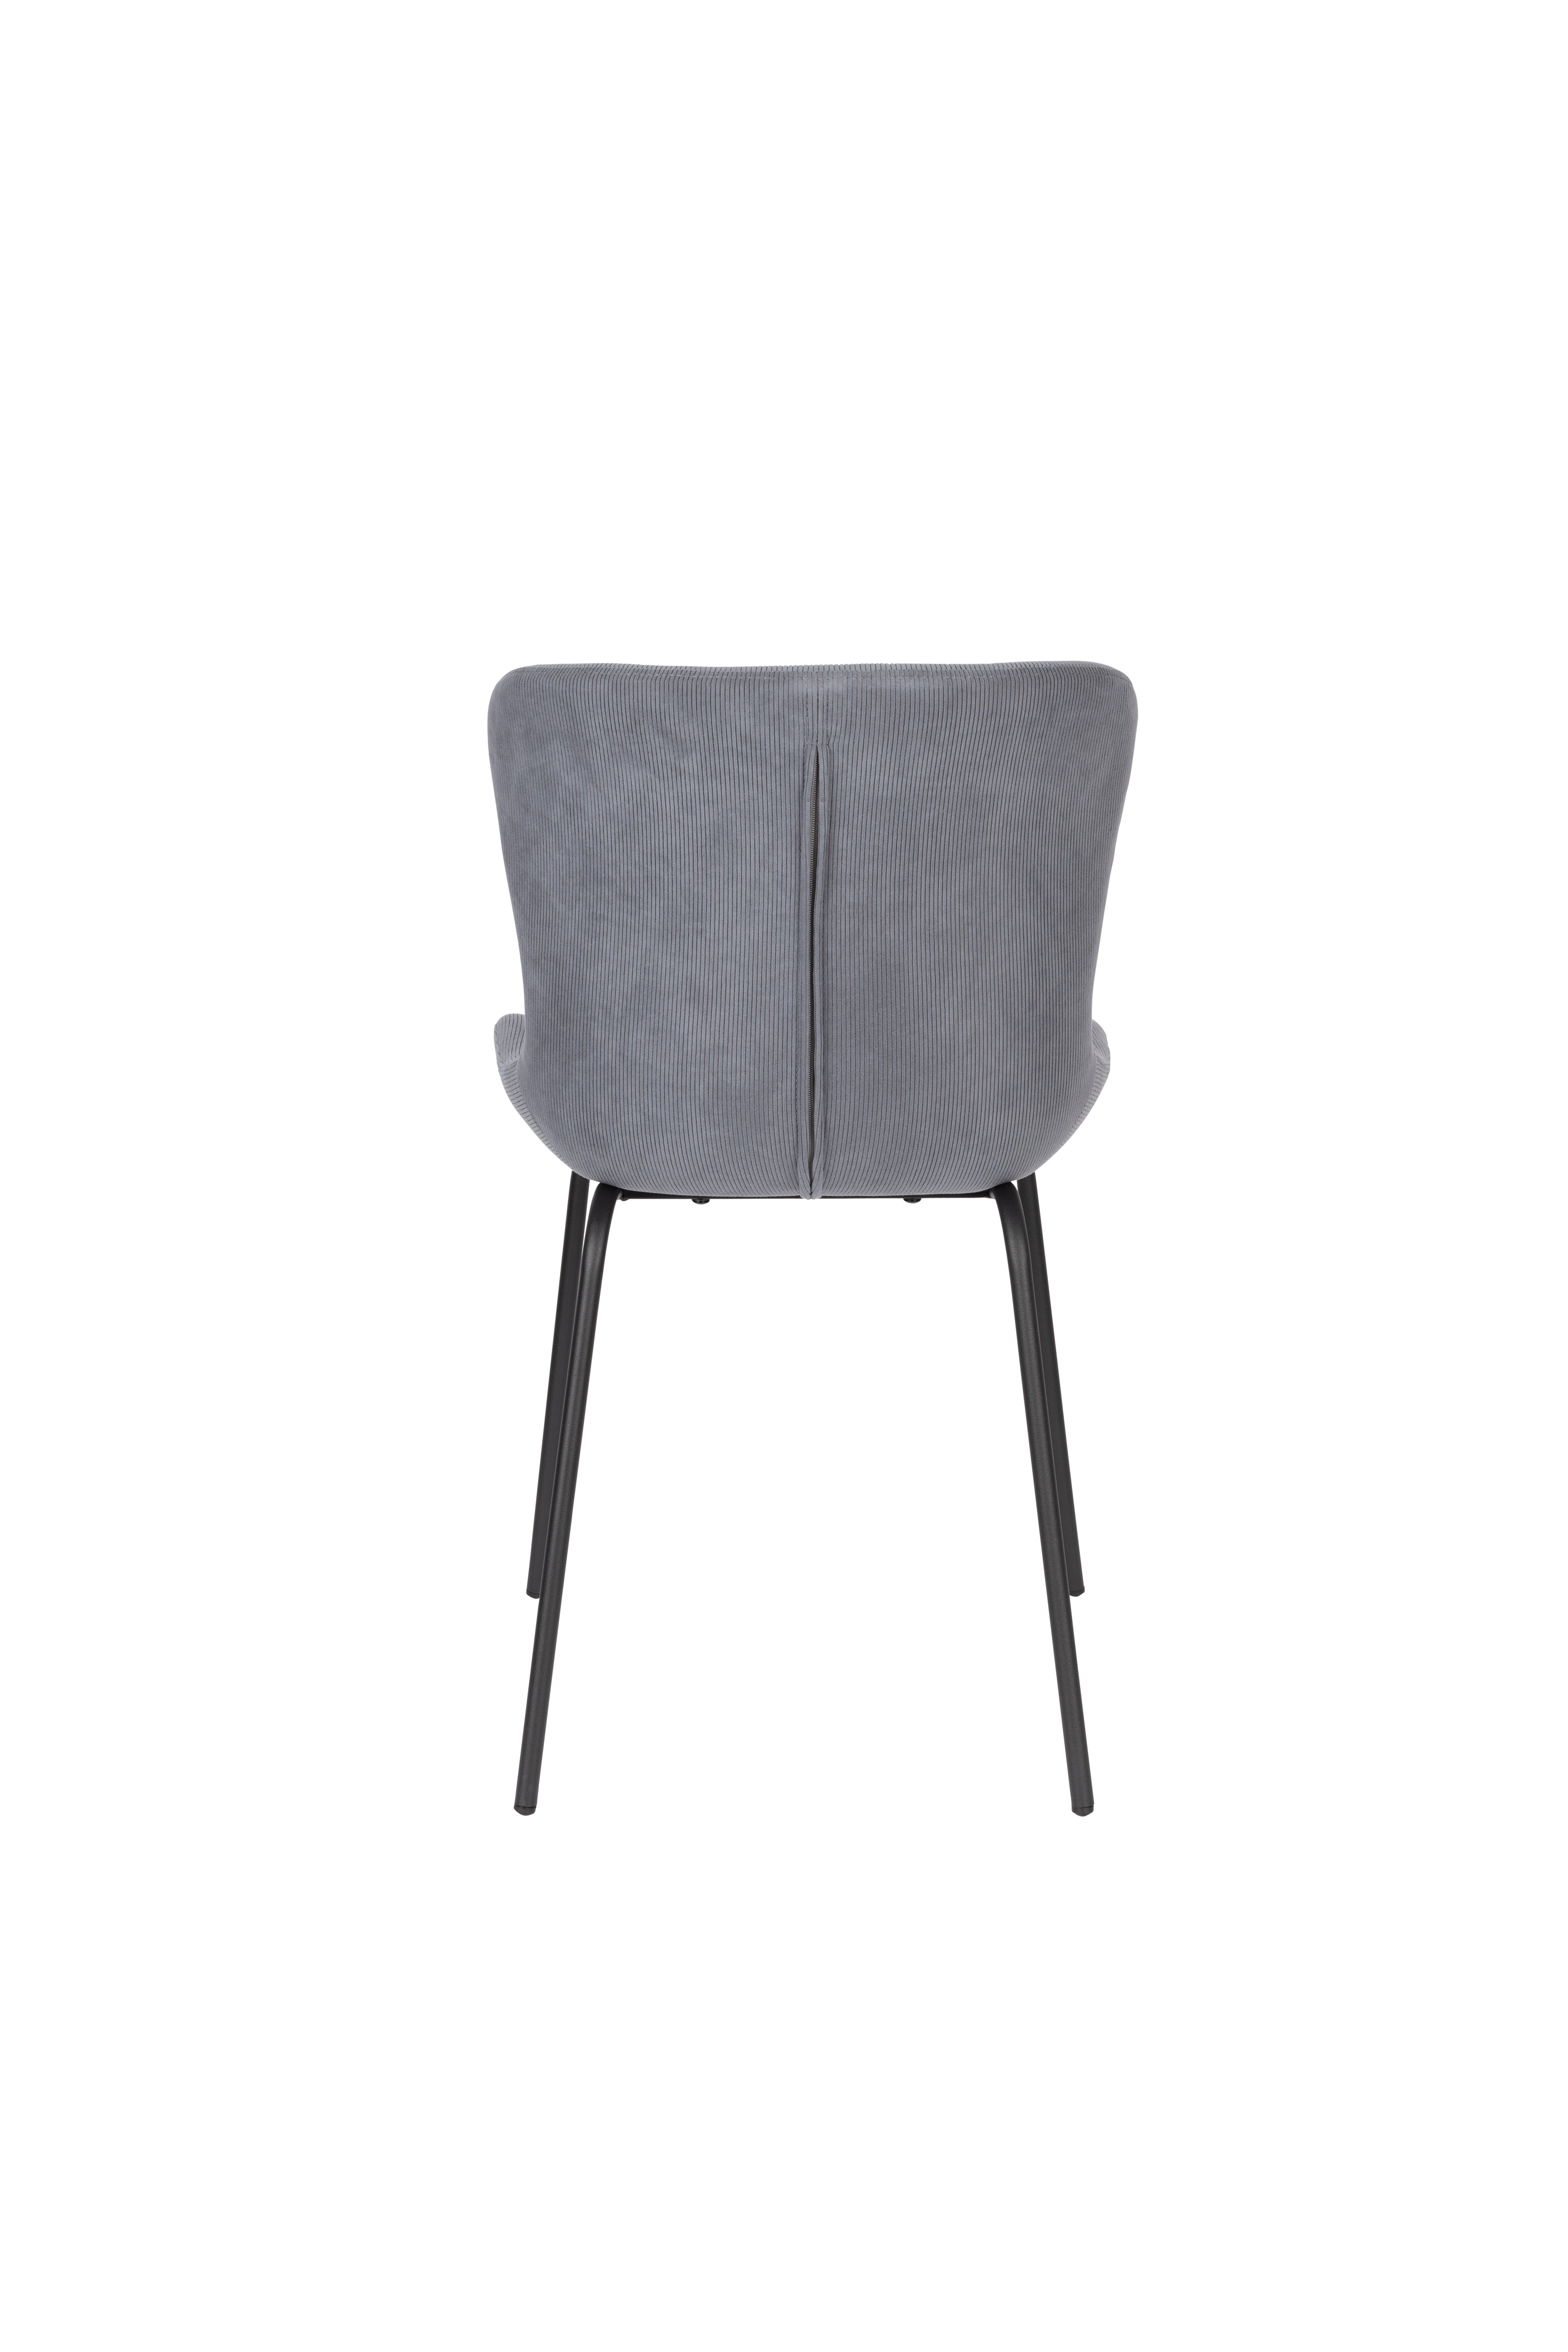 Stuhl Junzo Rib in Blau präsentiert im Onlineshop von KAQTU Design AG. Stuhl ist von White Label Living